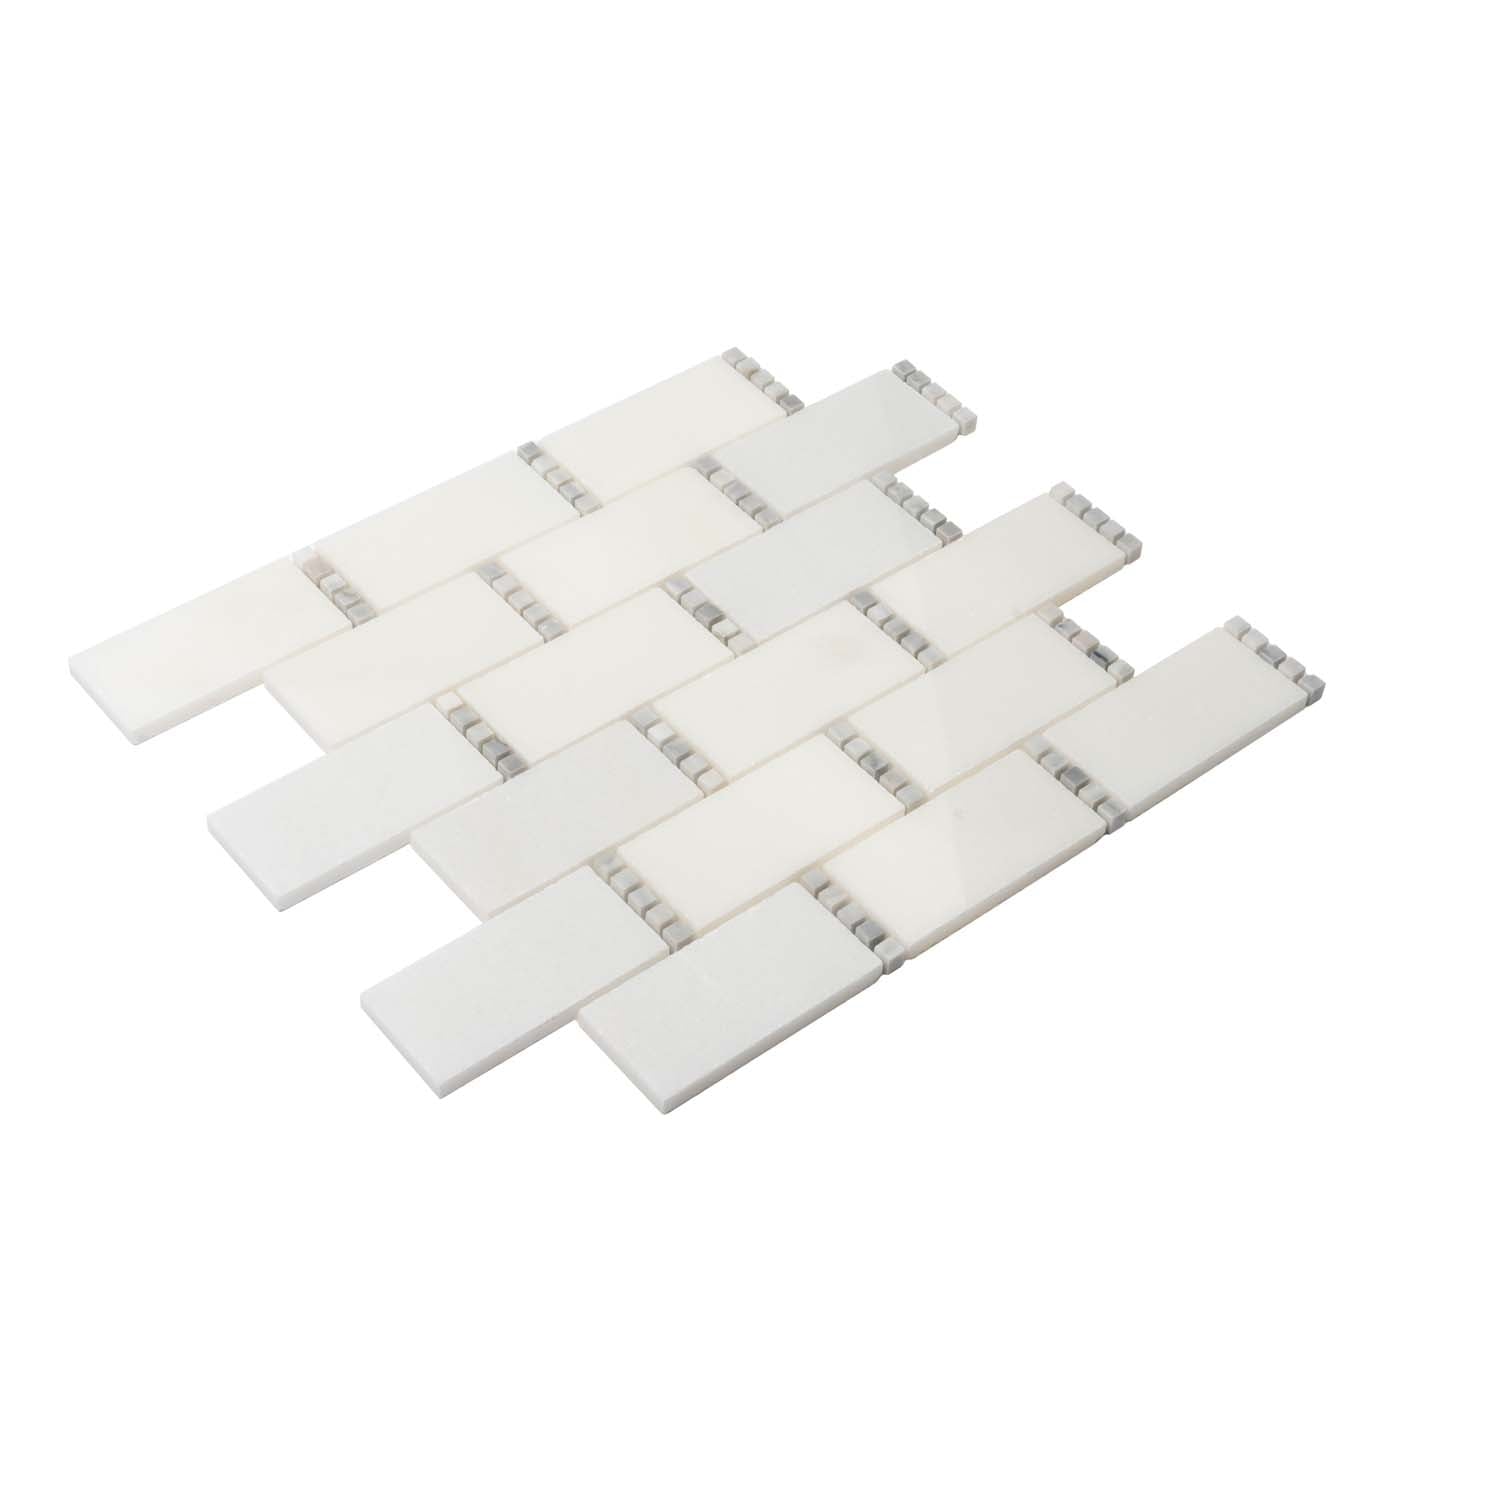 White Subway Tile